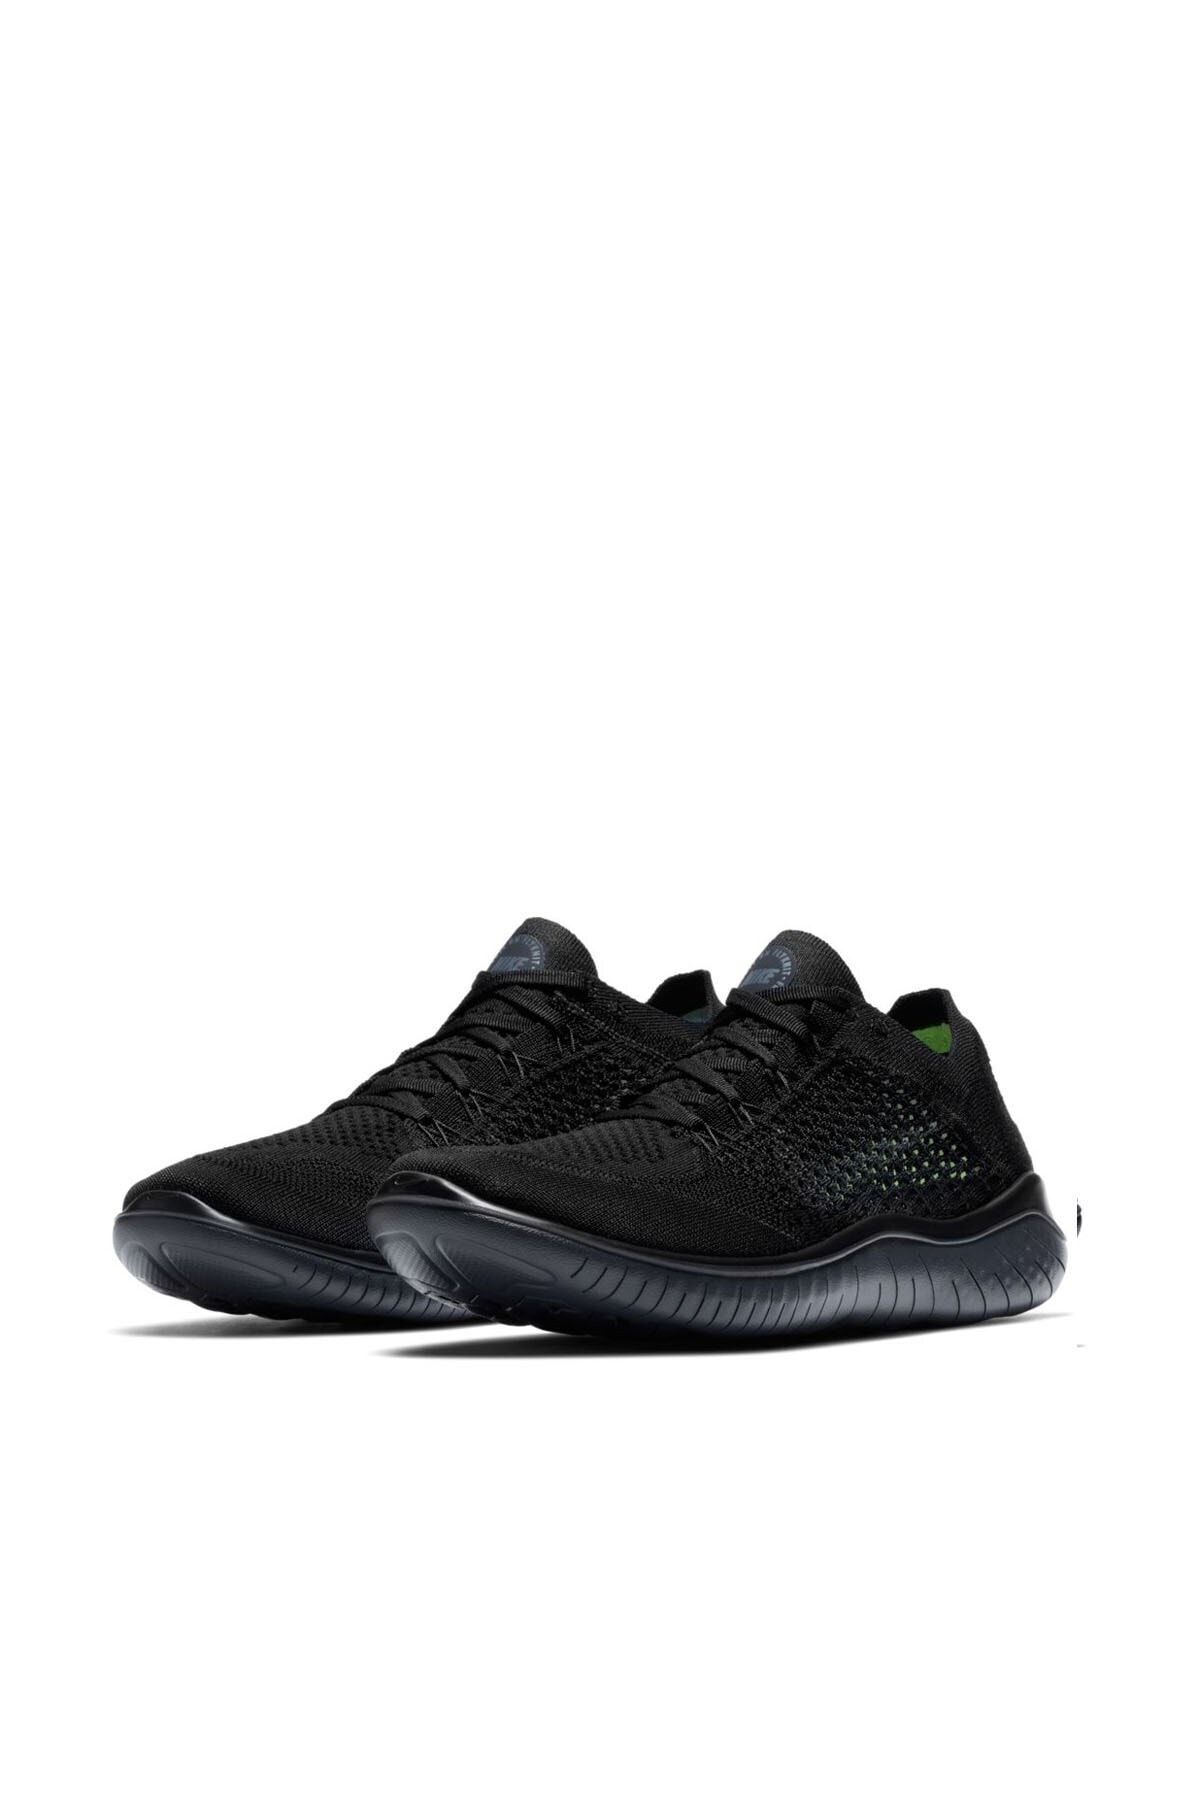 Nike Erkek Siyah Yürüyüş Koşu Ayakkabısı 942838-002 Free Rn Flyknıt 2018